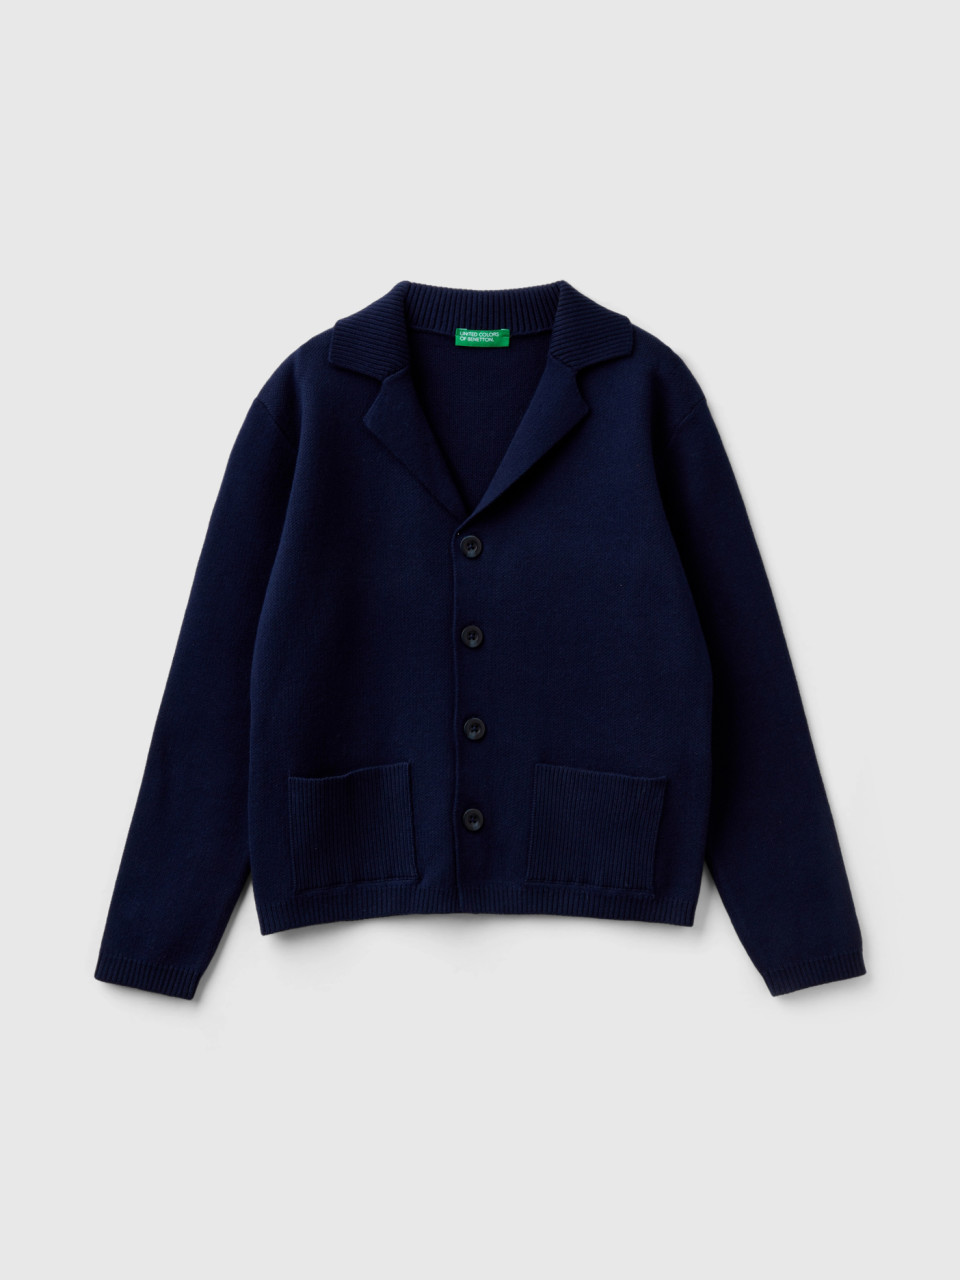 Benetton, Knit Blazer With Pockets, Dark Blue, Kids